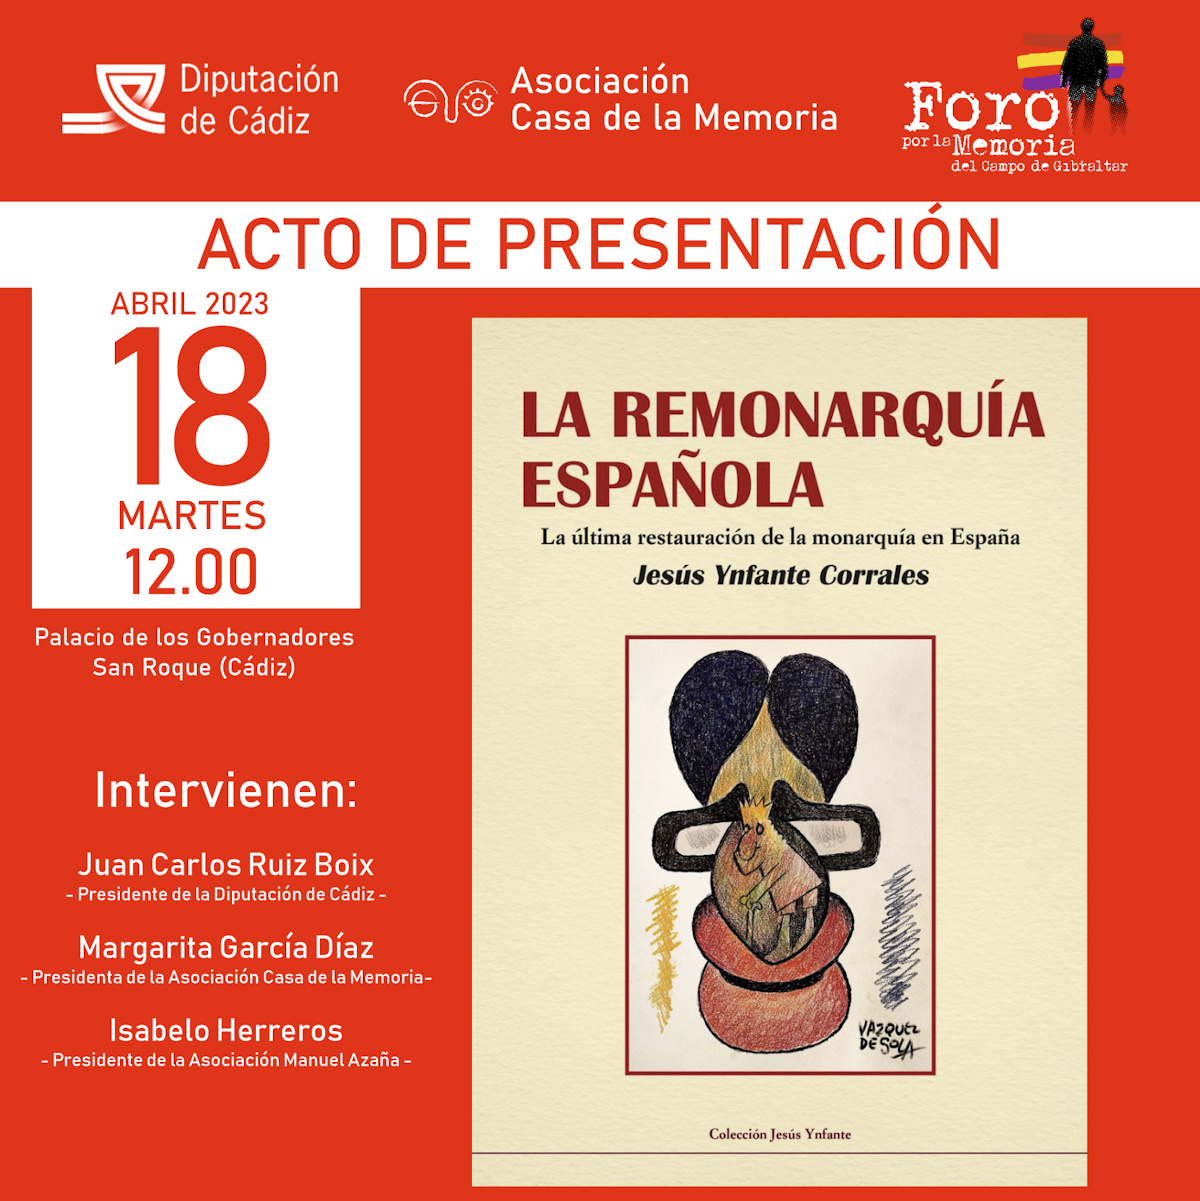 Cartel anunciador de la presentación del libro, con la portada del mismo diseñada por Andrés Vázquez de Sola.